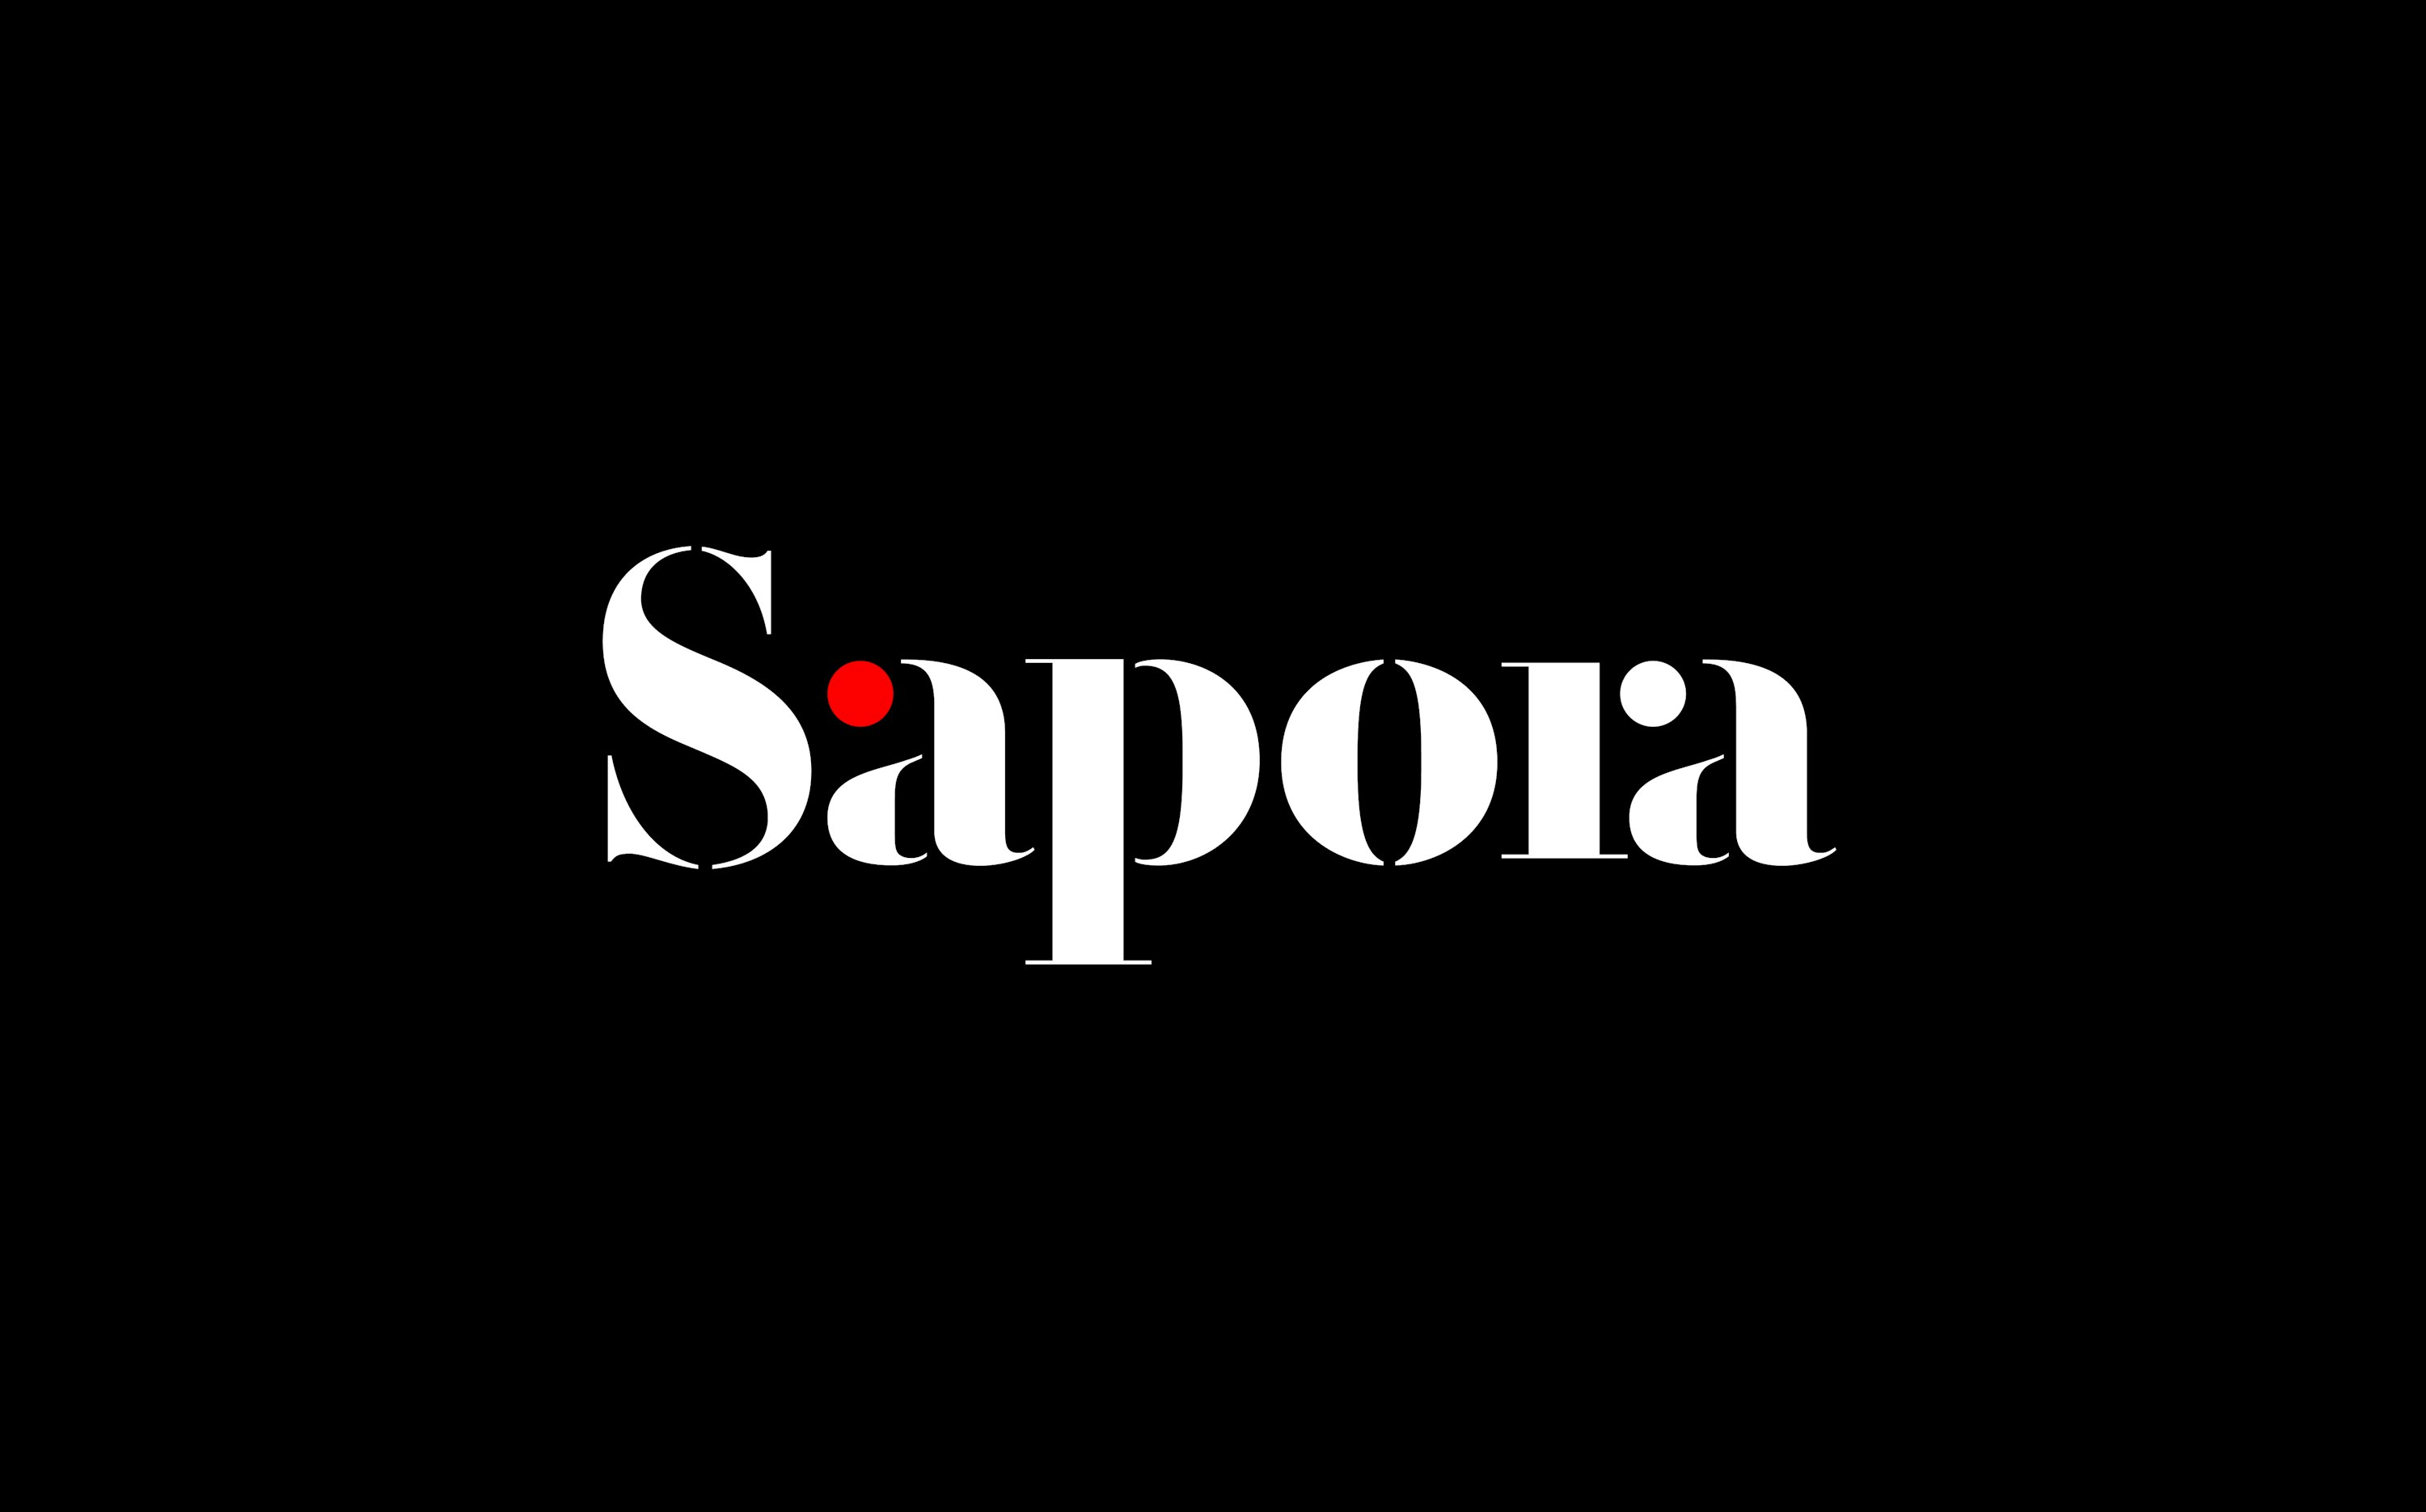 The Sapora logo